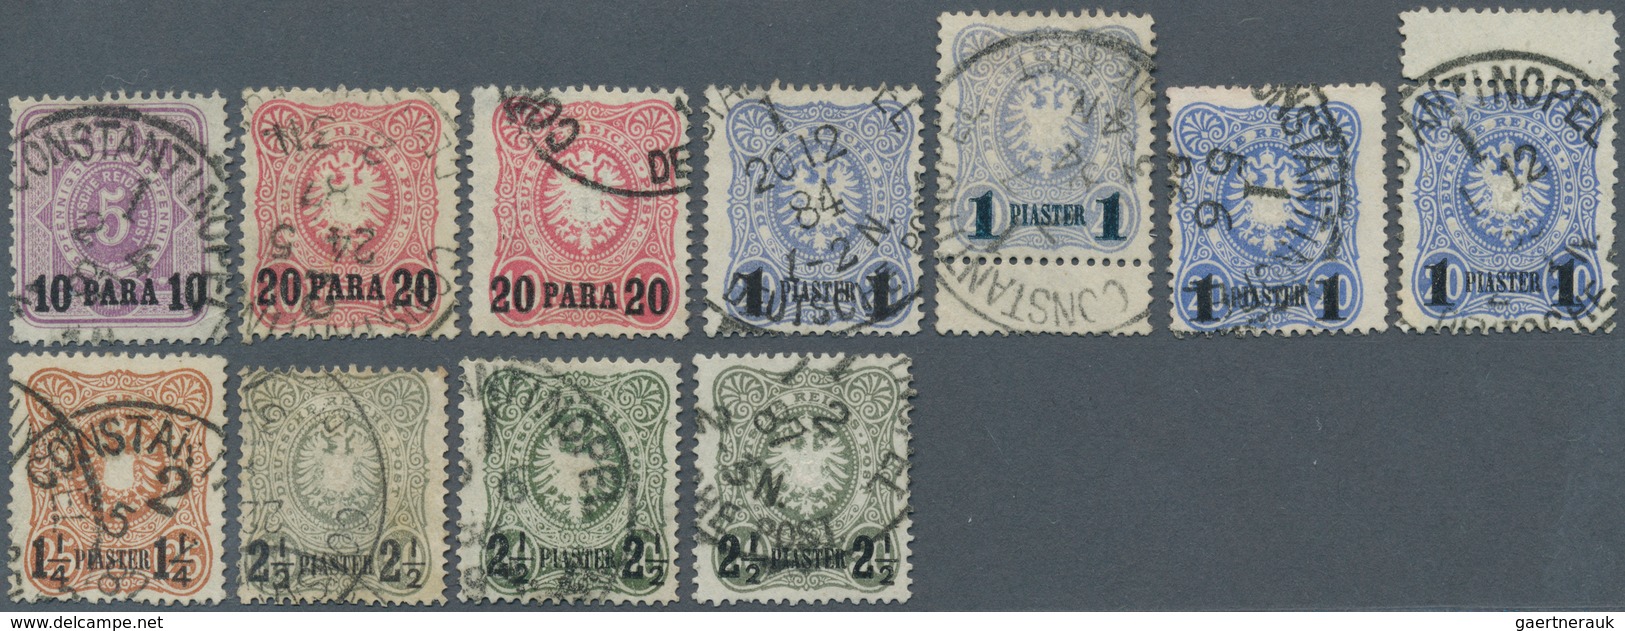 18505 Deutsche Post In Der Türkei: 1884, Freimarken Mit Aufdruck 10 PA -2 1/2 Pia Als Gestempelter Satz, D - Deutsche Post In Der Türkei